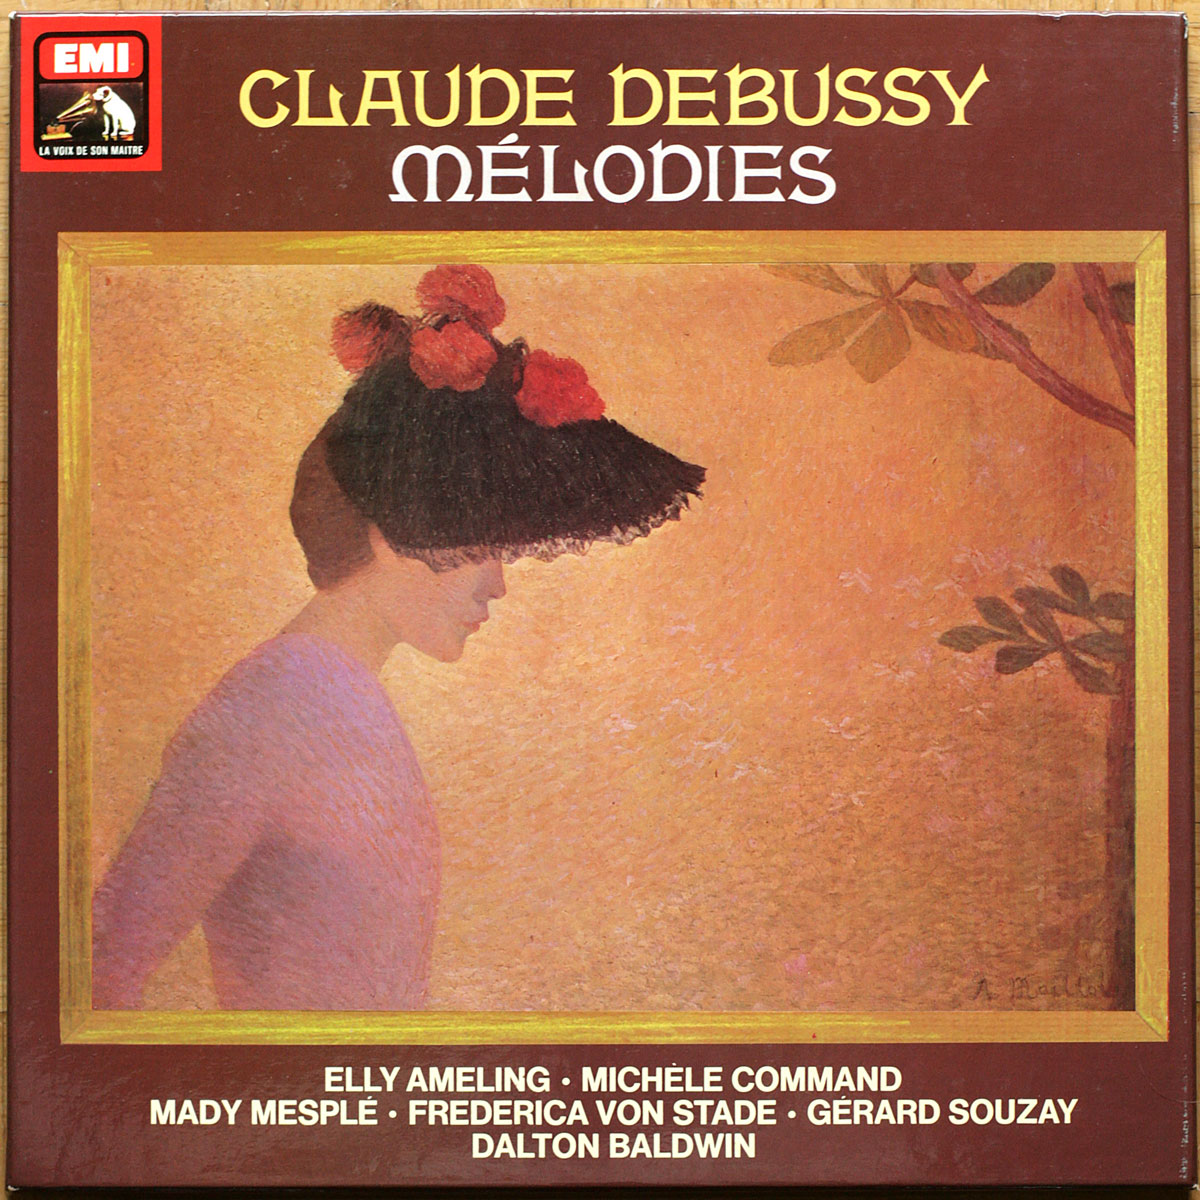 Debussy • Mélodies • EMI - La Voix de son maître 2C 165-16371/4 • Elly Ameling • Michèle Command • Mady Mesplé • Frederica von Stade • Gérard Souzay • Dalton Baldwin